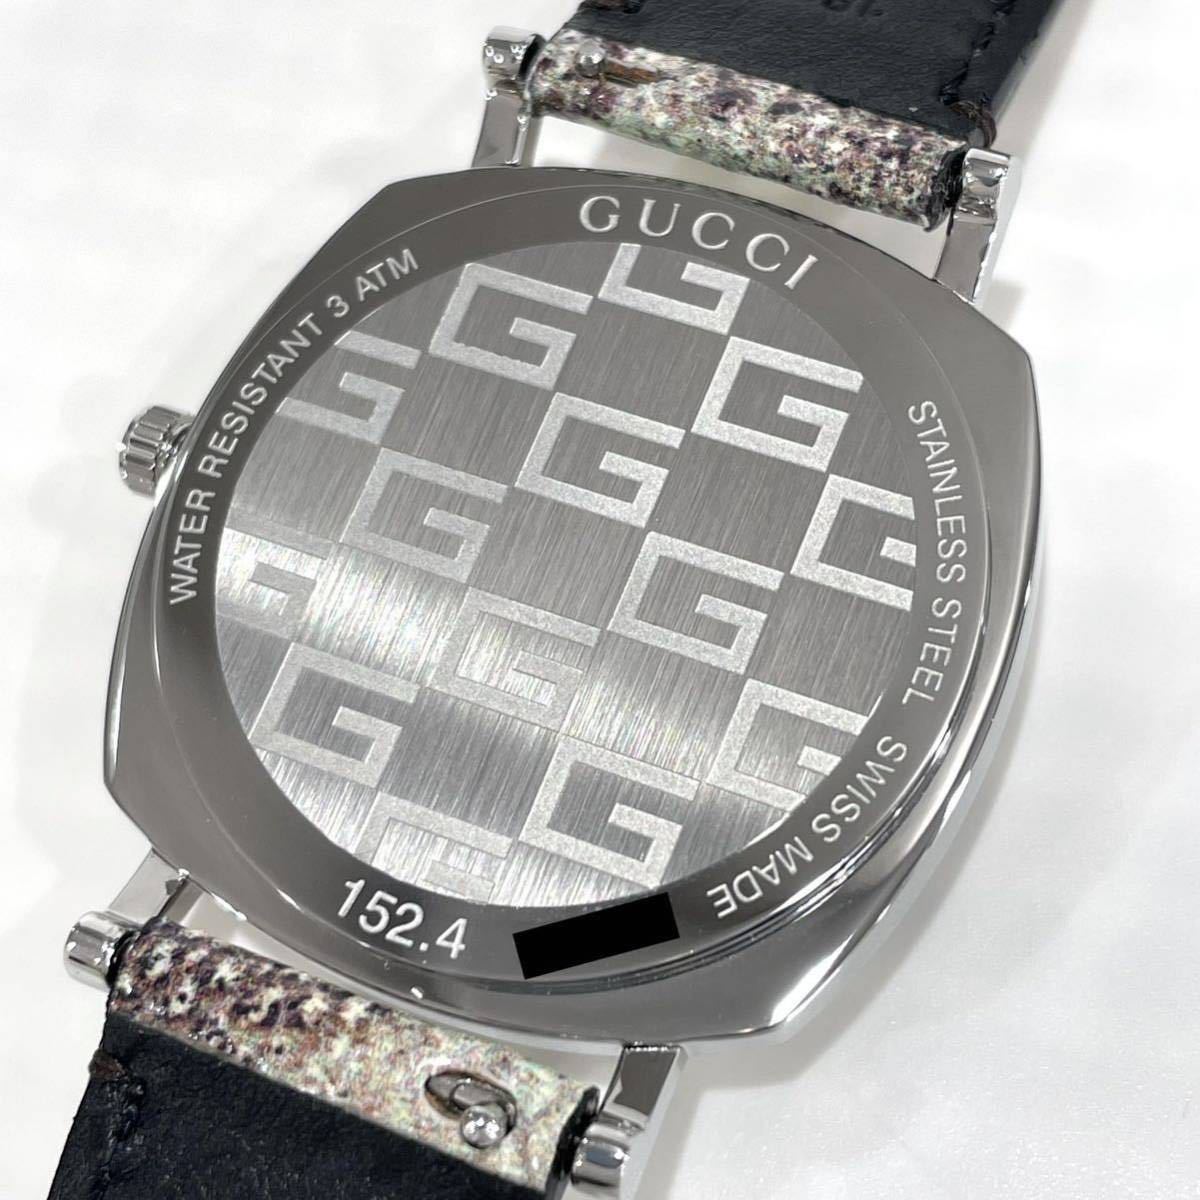 新品 GUCCI グッチ 腕時計 152.4 YA152401 クォーツ ヘビ革ベルト ステンレス ブルー文字盤 メンズ 箱保付き 送料無料